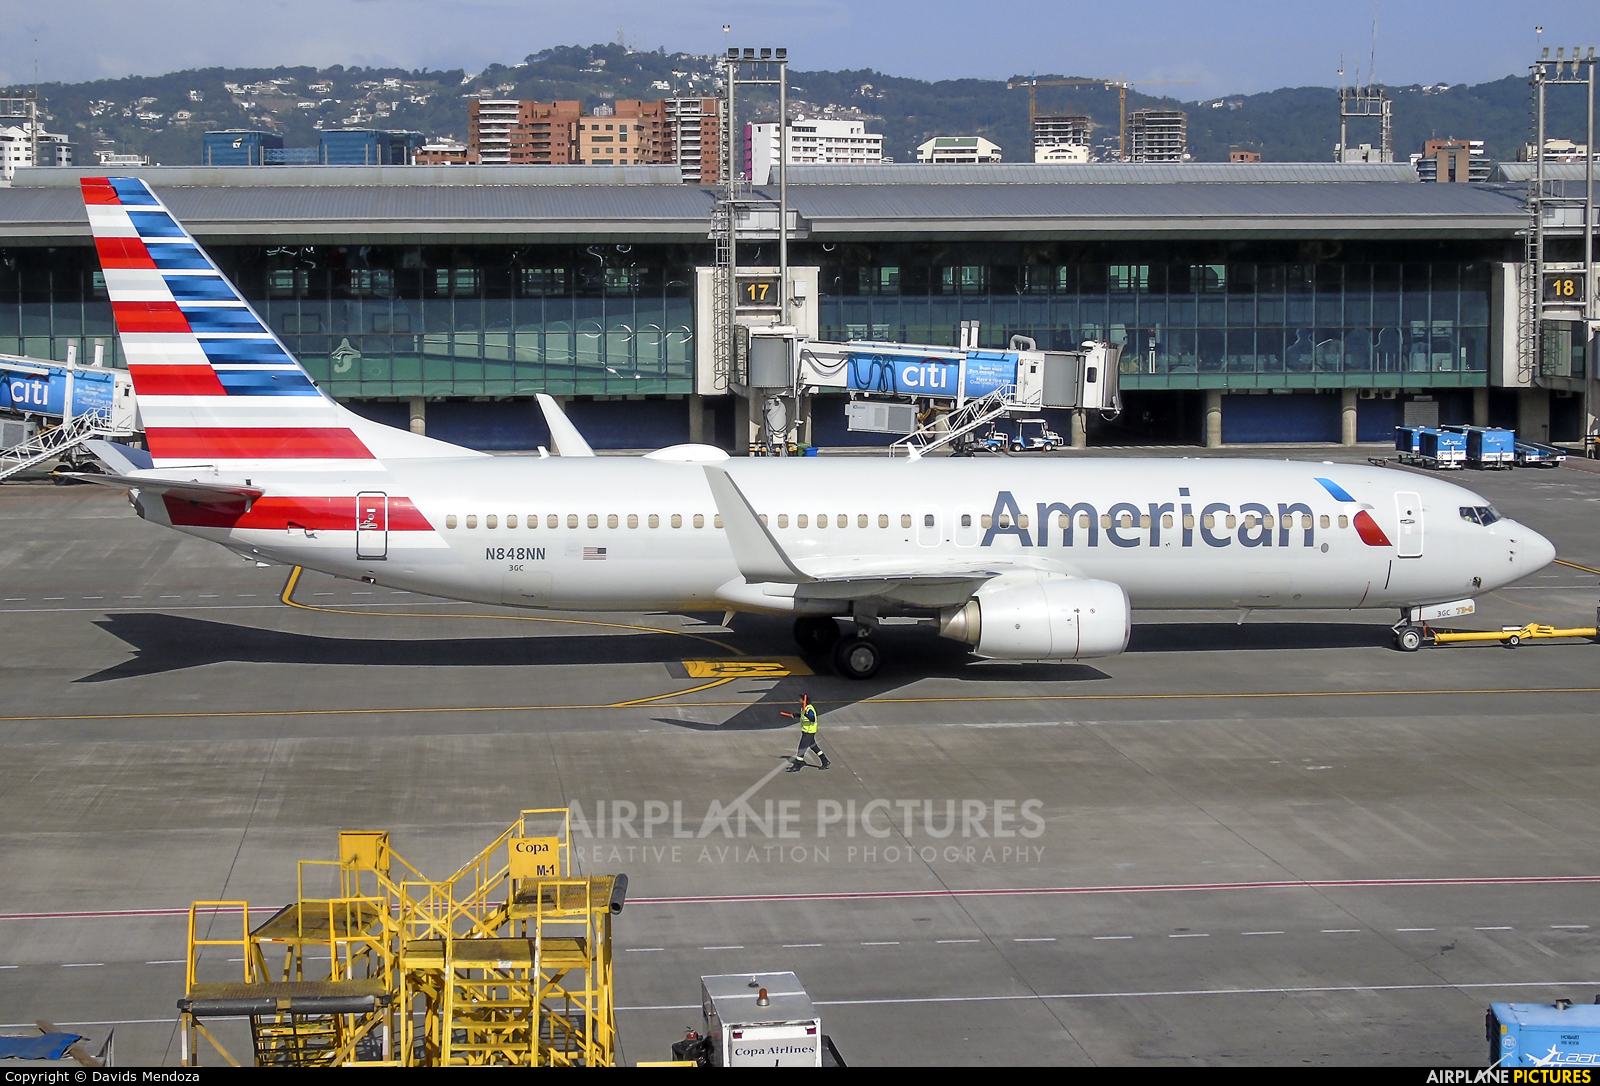 N848nn American Airlines Boeing 737 800 At Guatemala La